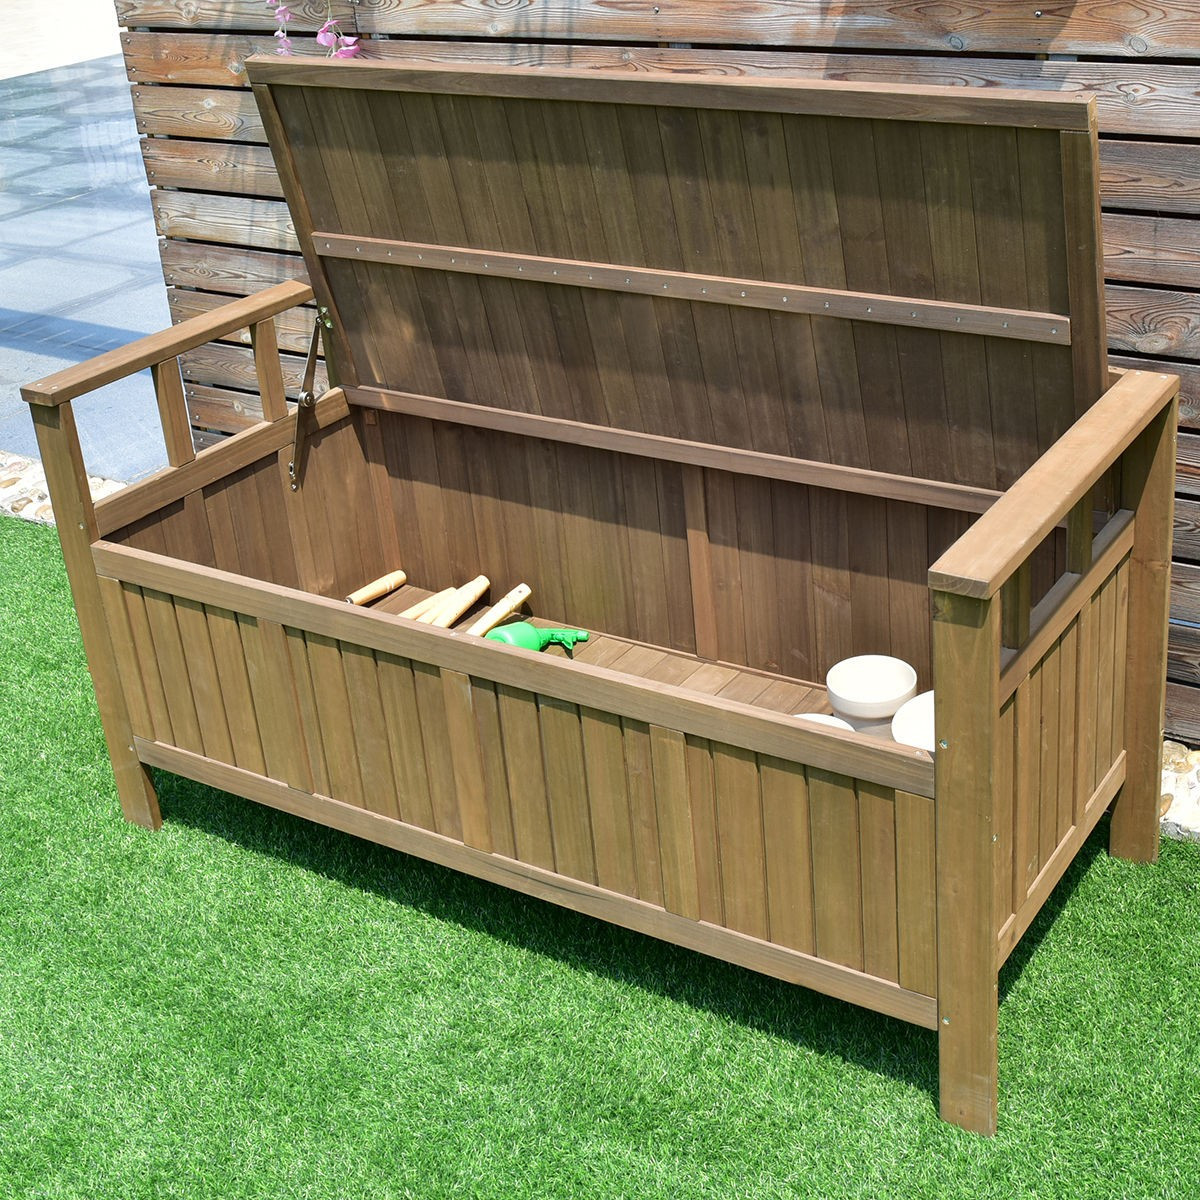 Storage Bench For Deck
 70 Gallon 2 in 1 Outdoor Garden Bench Storage Deck Box